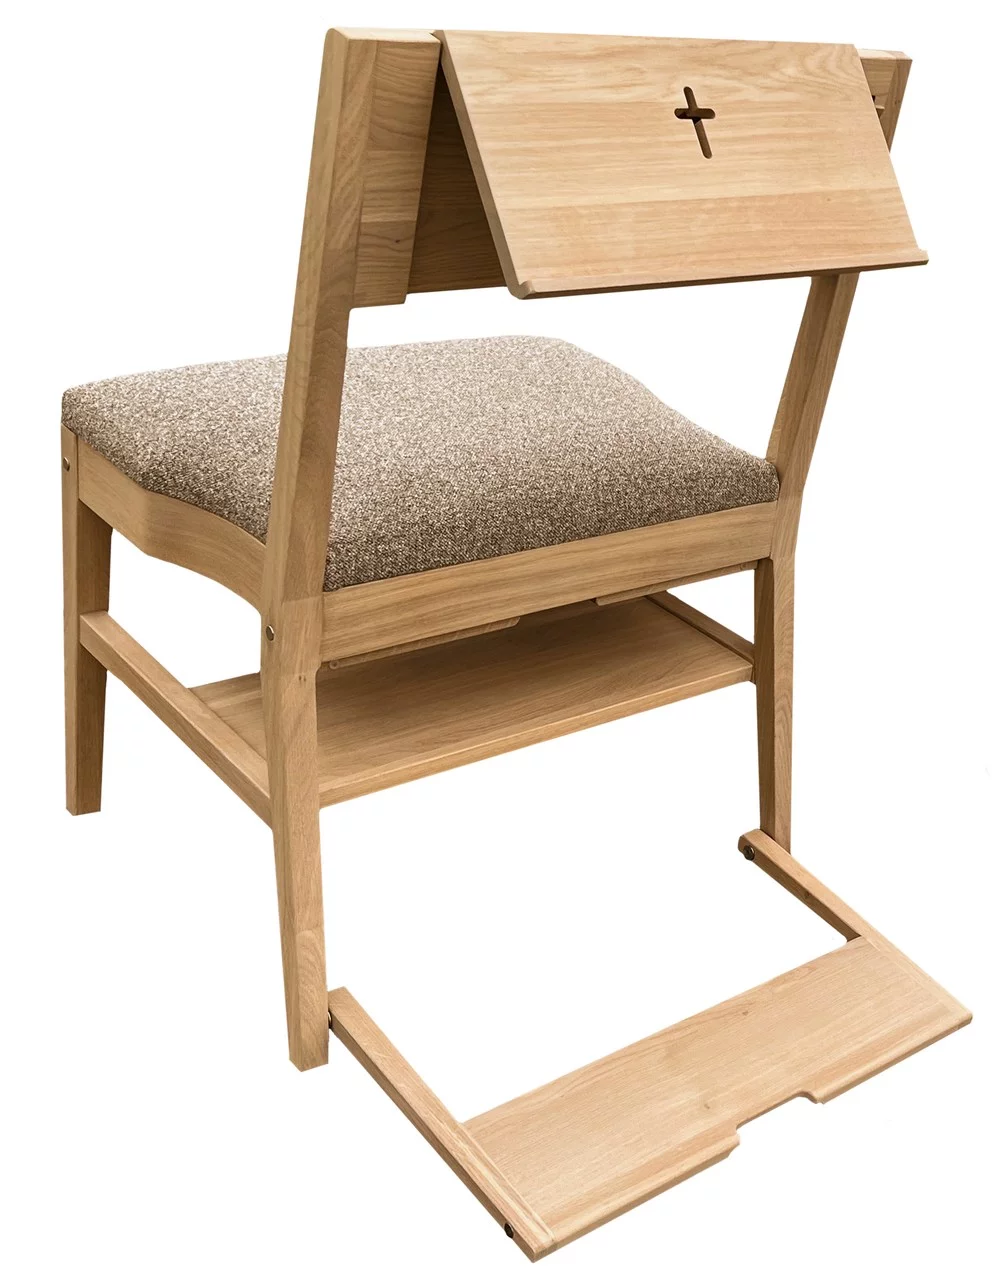 Dubová kostelní židle ZOE s kompletní nabídkou doplňků - pultík, háček, klekátko, systém spojovatelnosti, polička pod sezením a čalounění sedáku